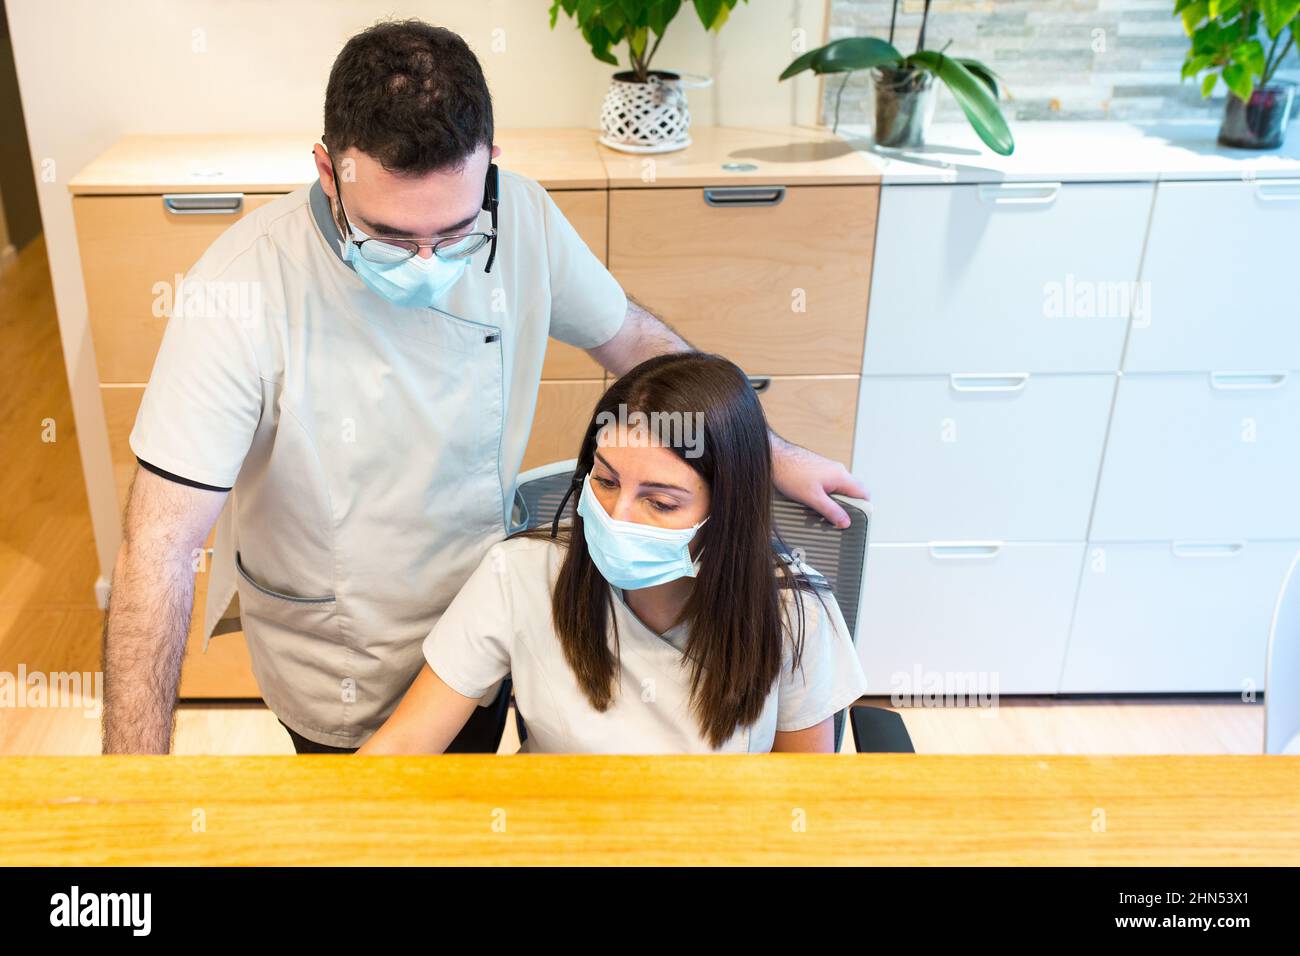 Weibliche und männliche Rezeptionisten verwenden eine Gesichtsmaske, während sie an der Rezeption eines Gesundheitszentrums arbeiten. Stockfoto